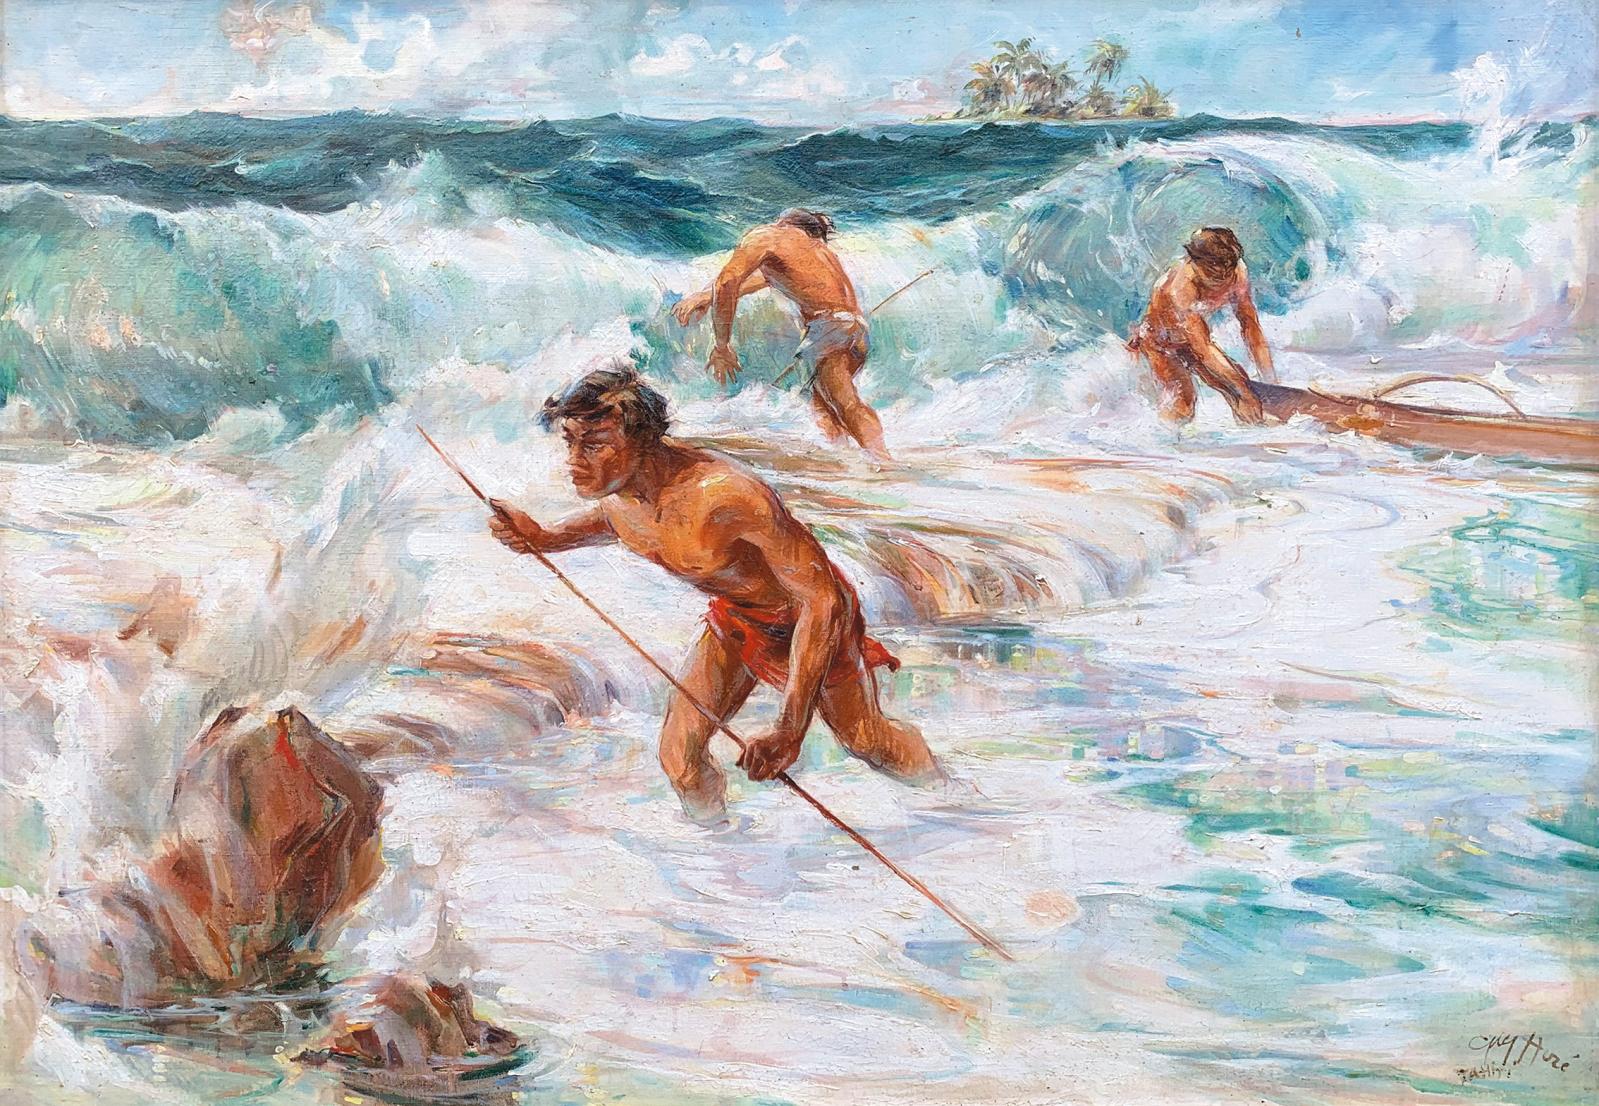 Huzé peint Tahiti